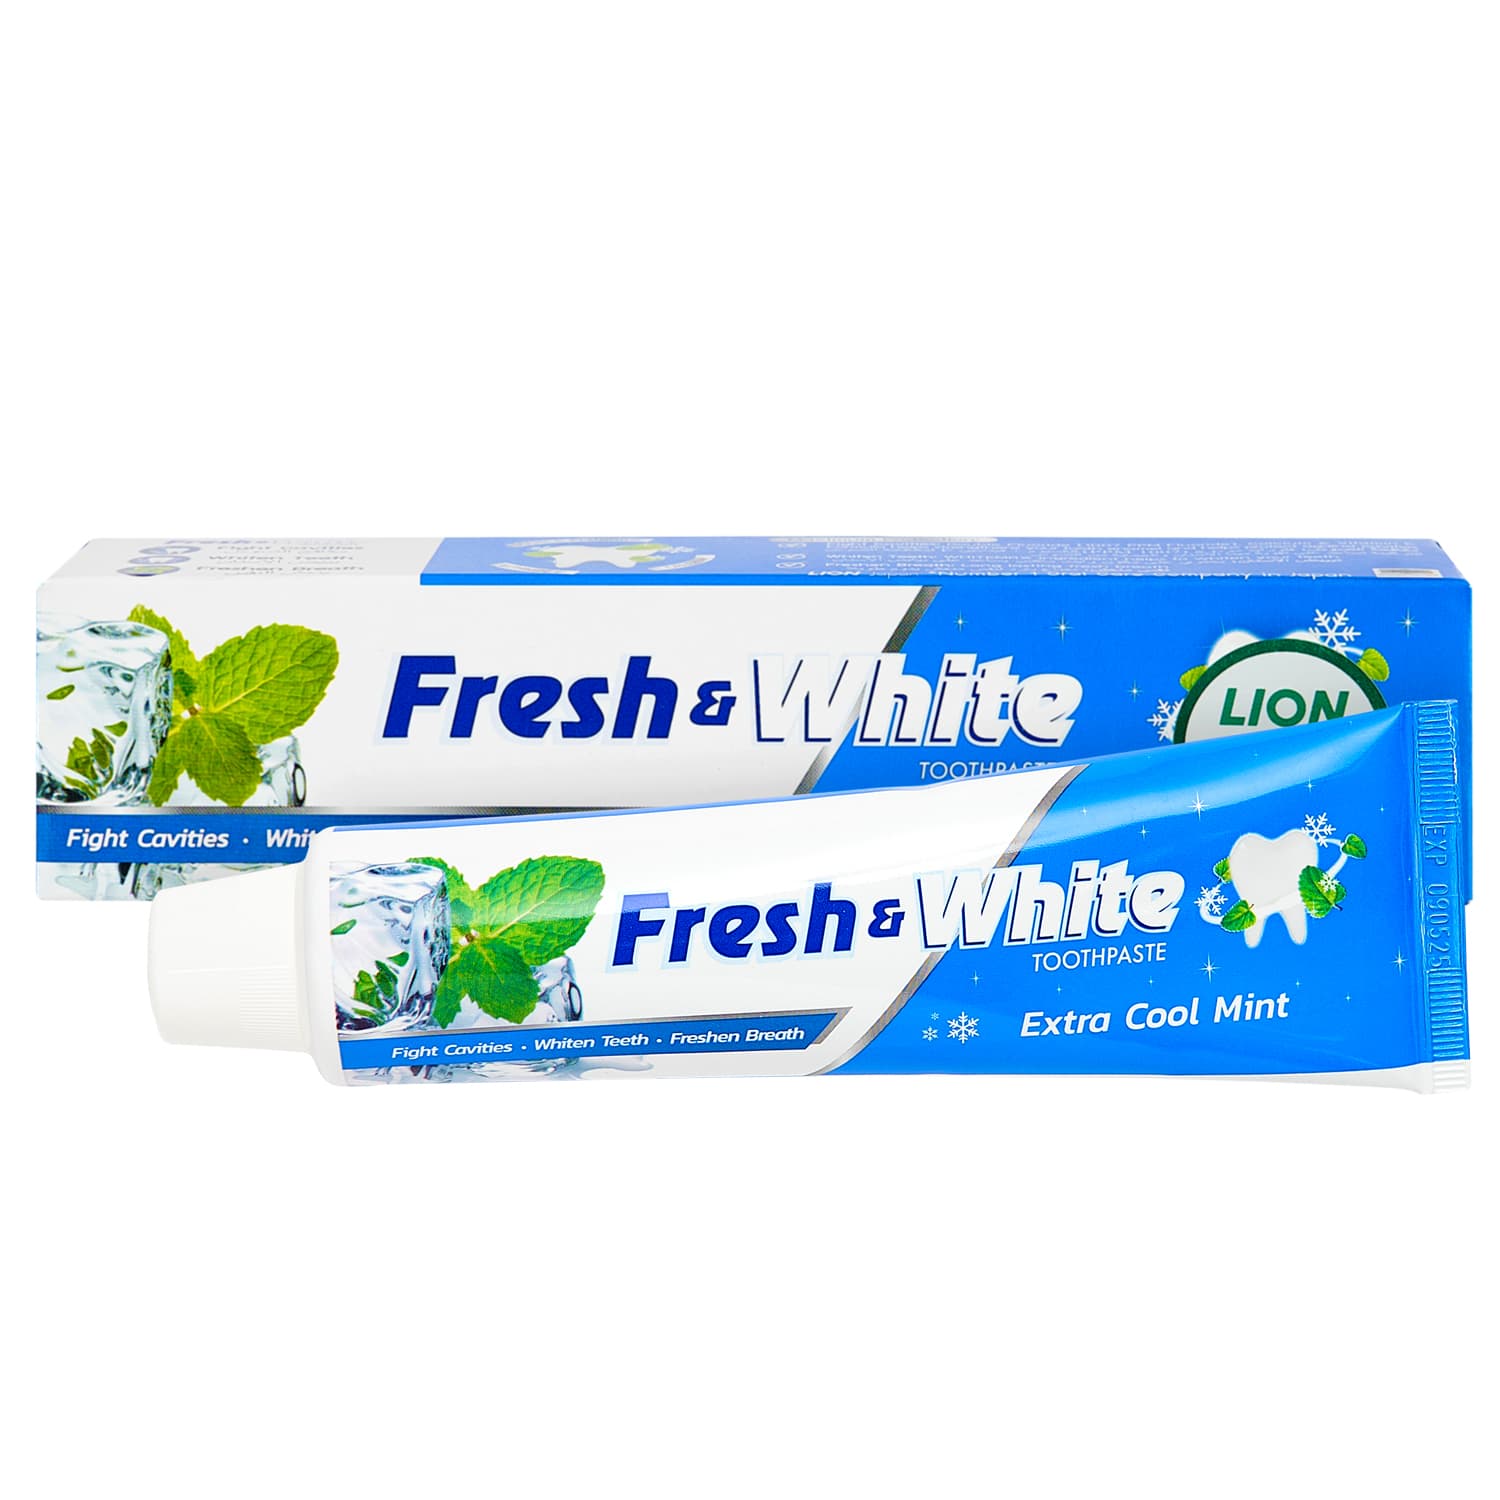 Lion Thailand Отбеливающая зубная паста Суперпрохладная мята, 160 г (Lion Thailand, Fresh & White) отбеливающая зубная паста для ухода за зубами и ротовой полостью